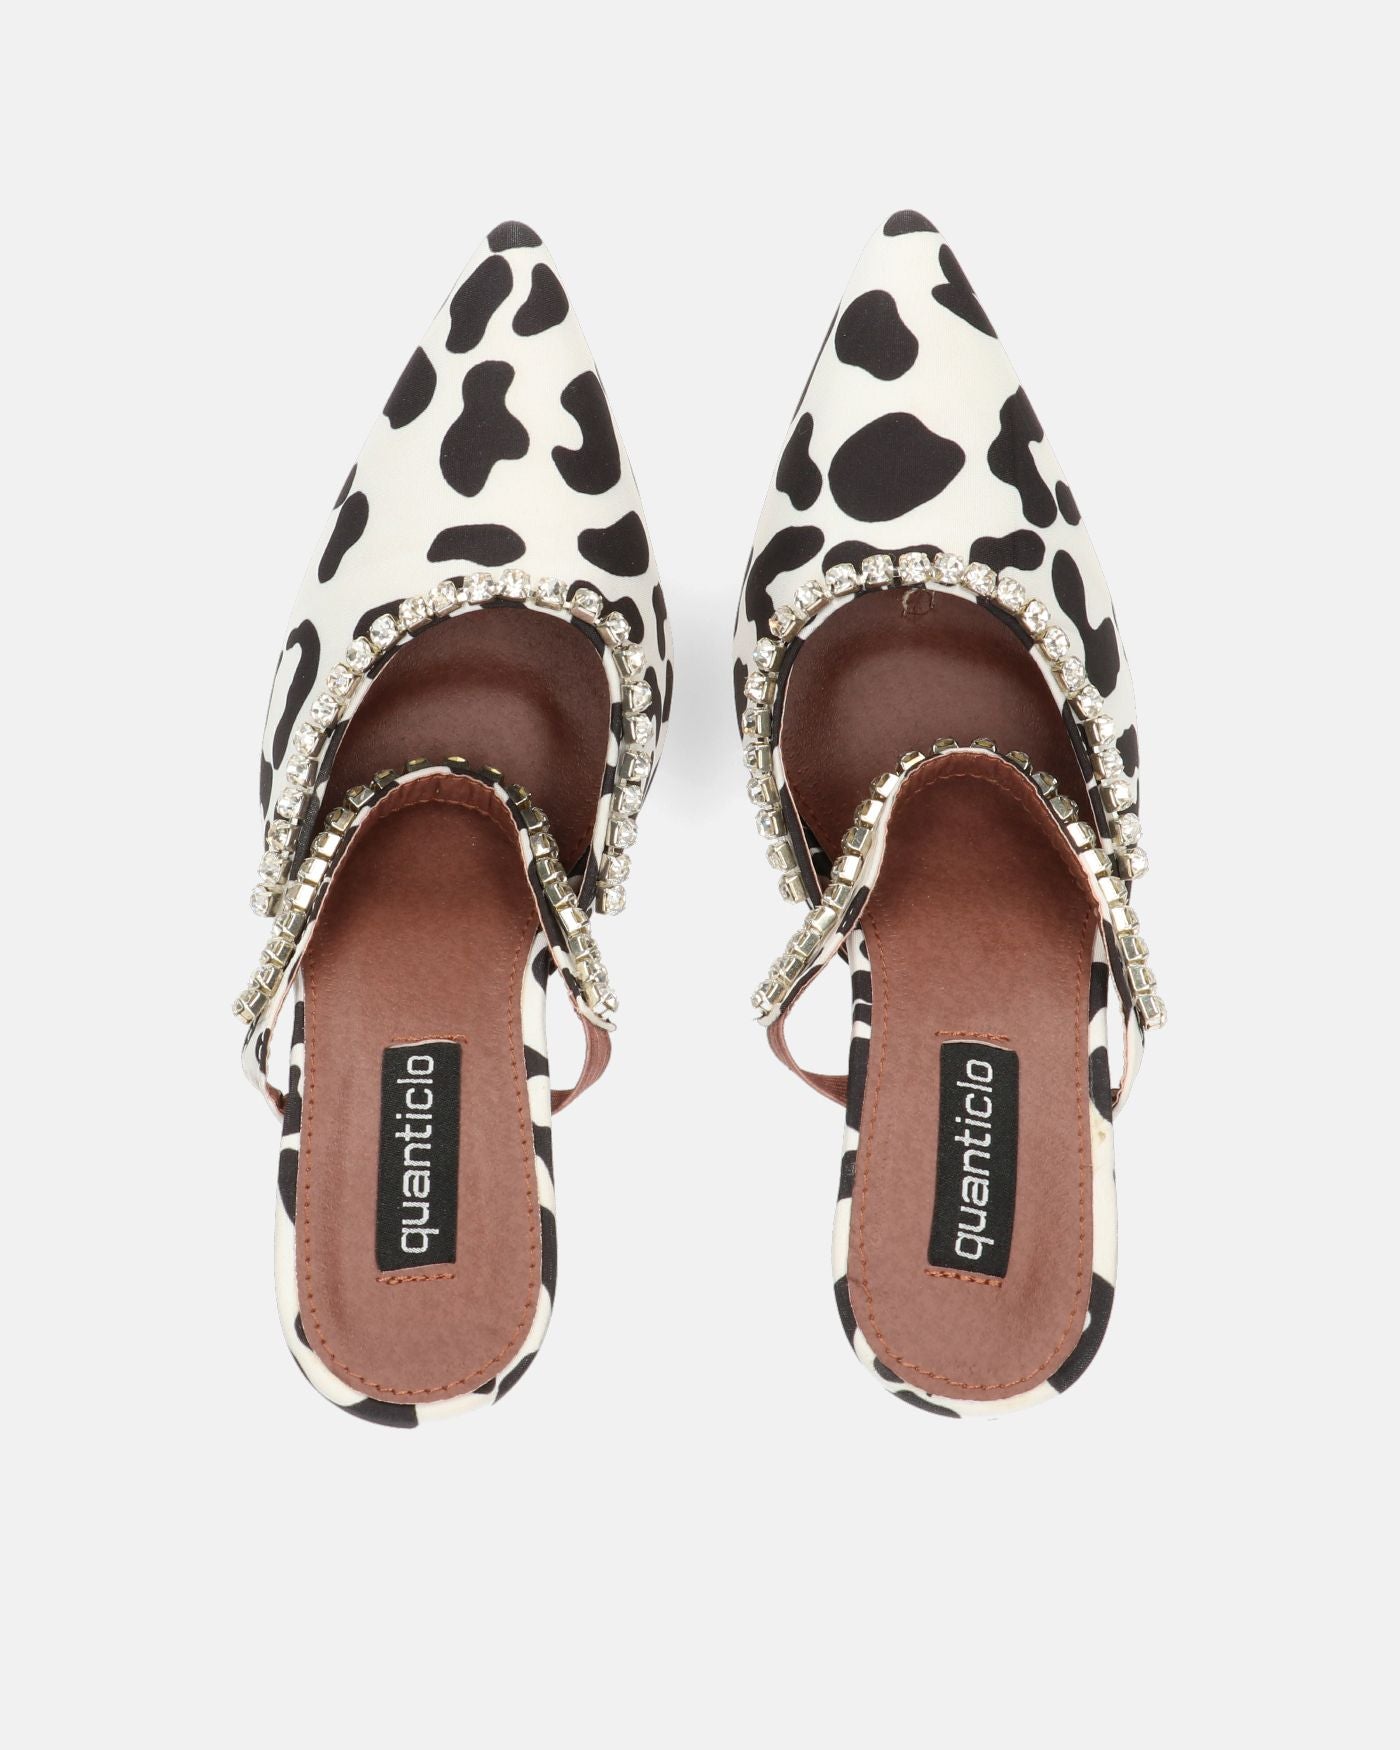 PERAL - zapato de tacón en estampado de leopardo blanco y negro con gemas